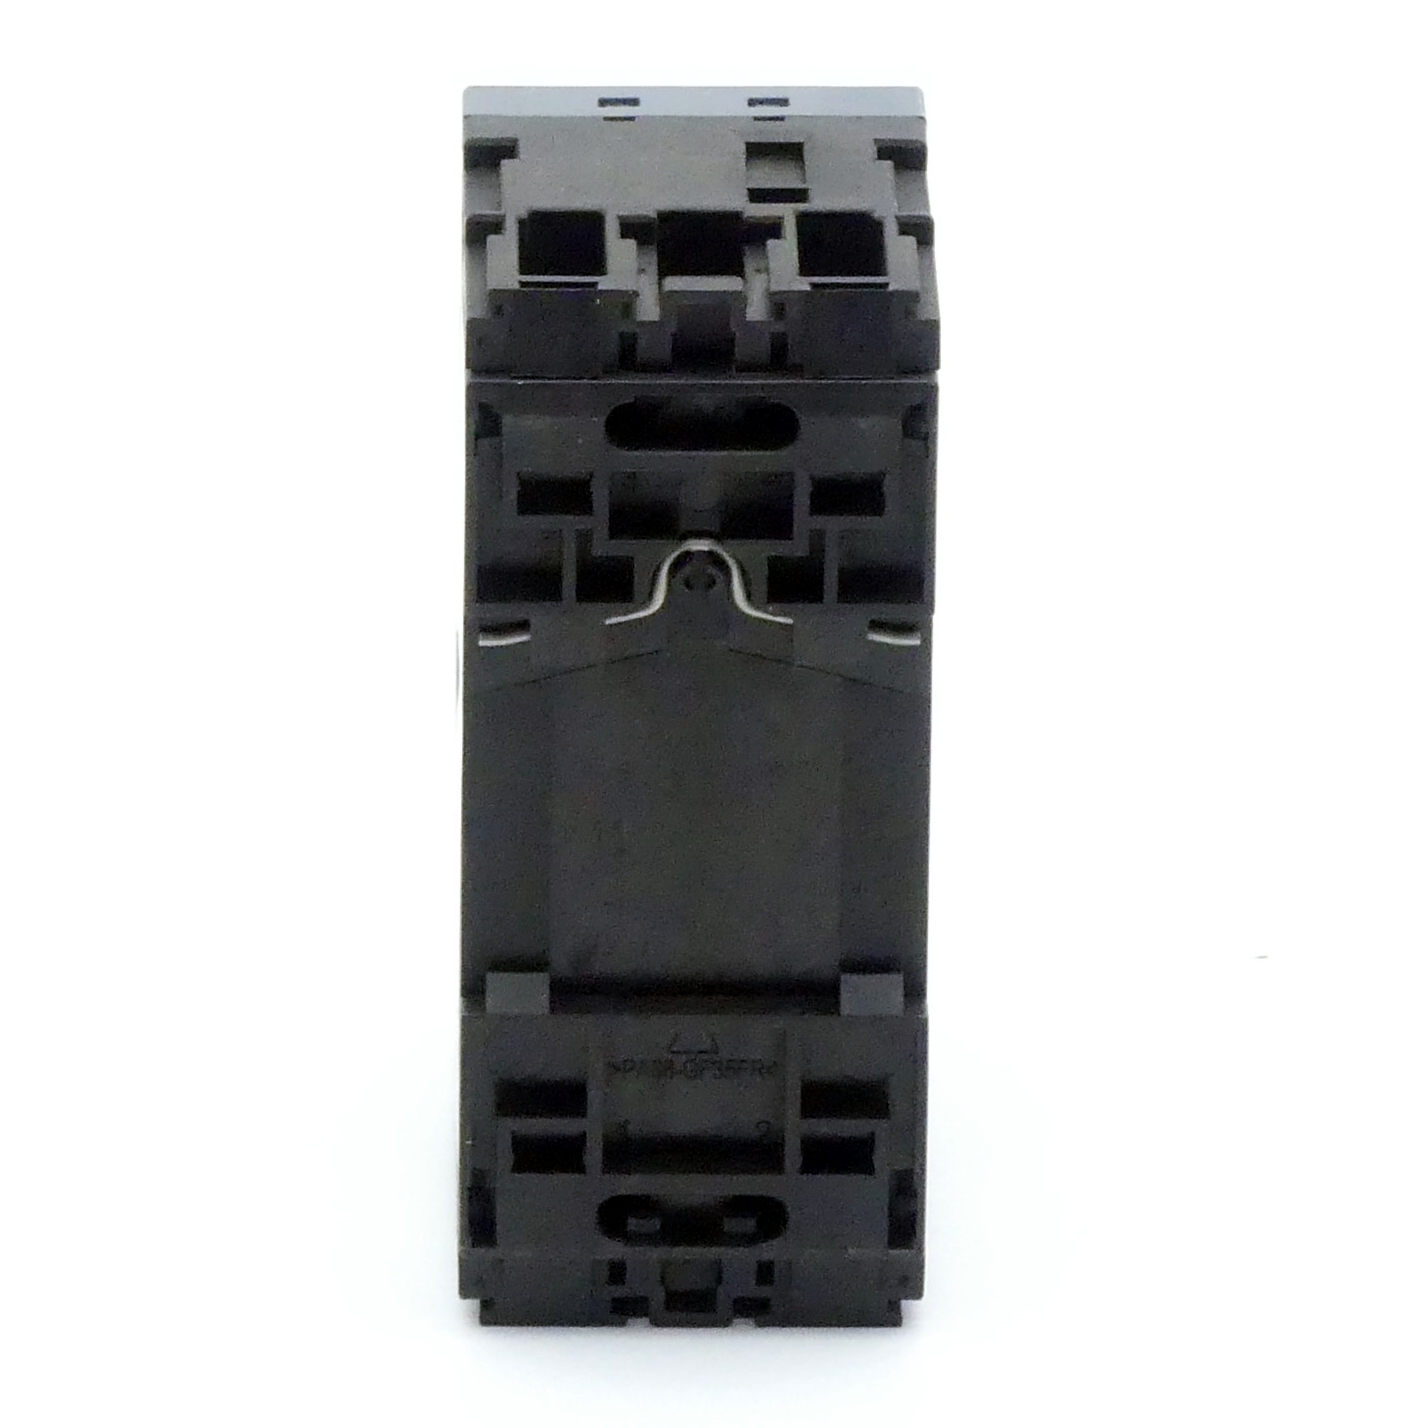 Circuit breaker 3RV2011-1GA20 